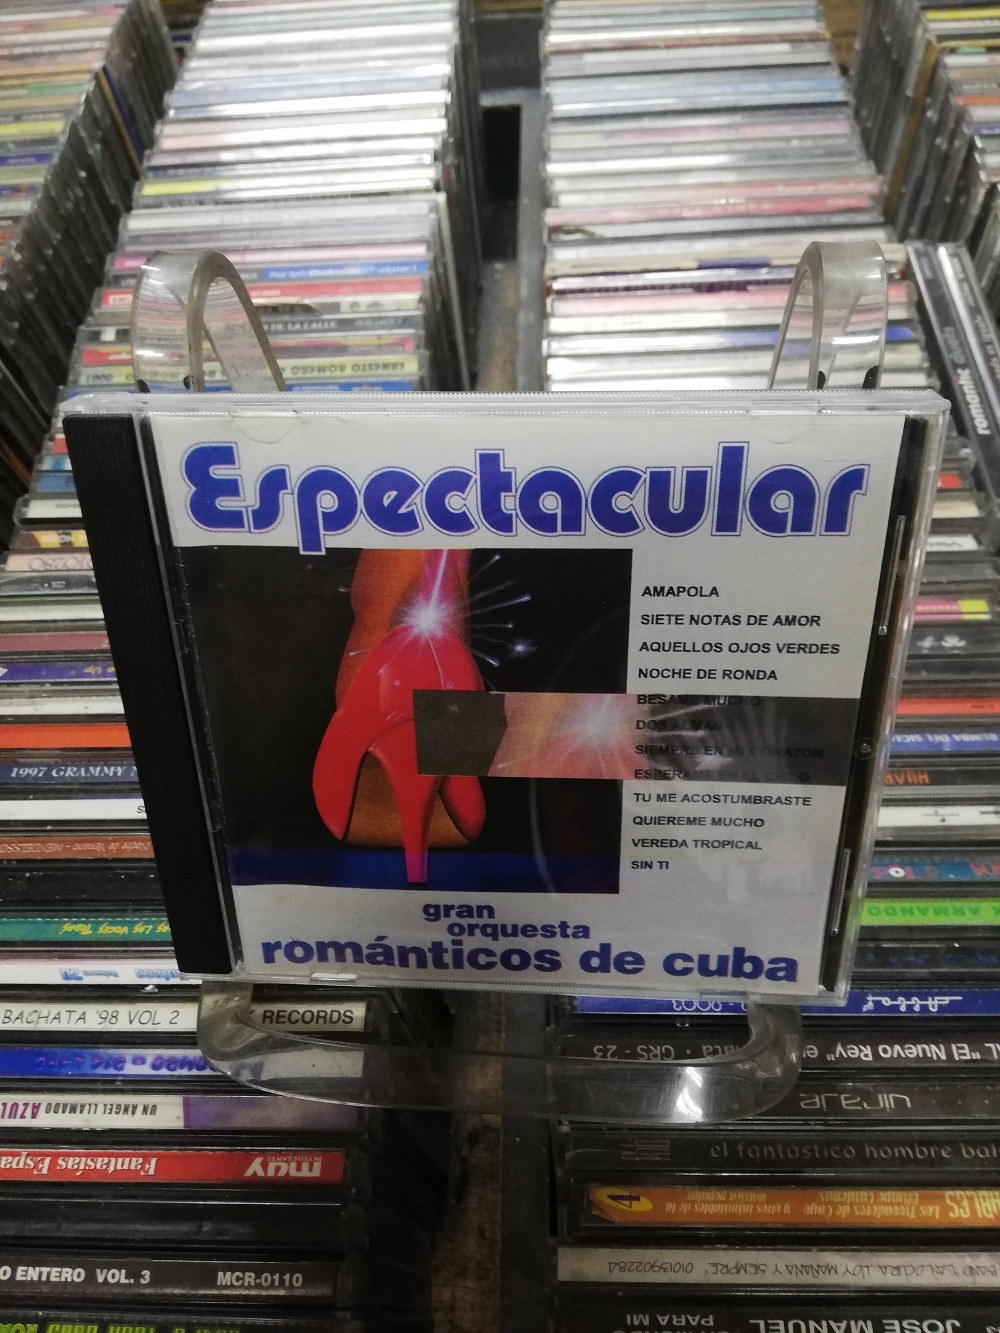 Imagen CD GRAN ORQUESTA ROMANTICA DE CUBA - ESPECTACULAR